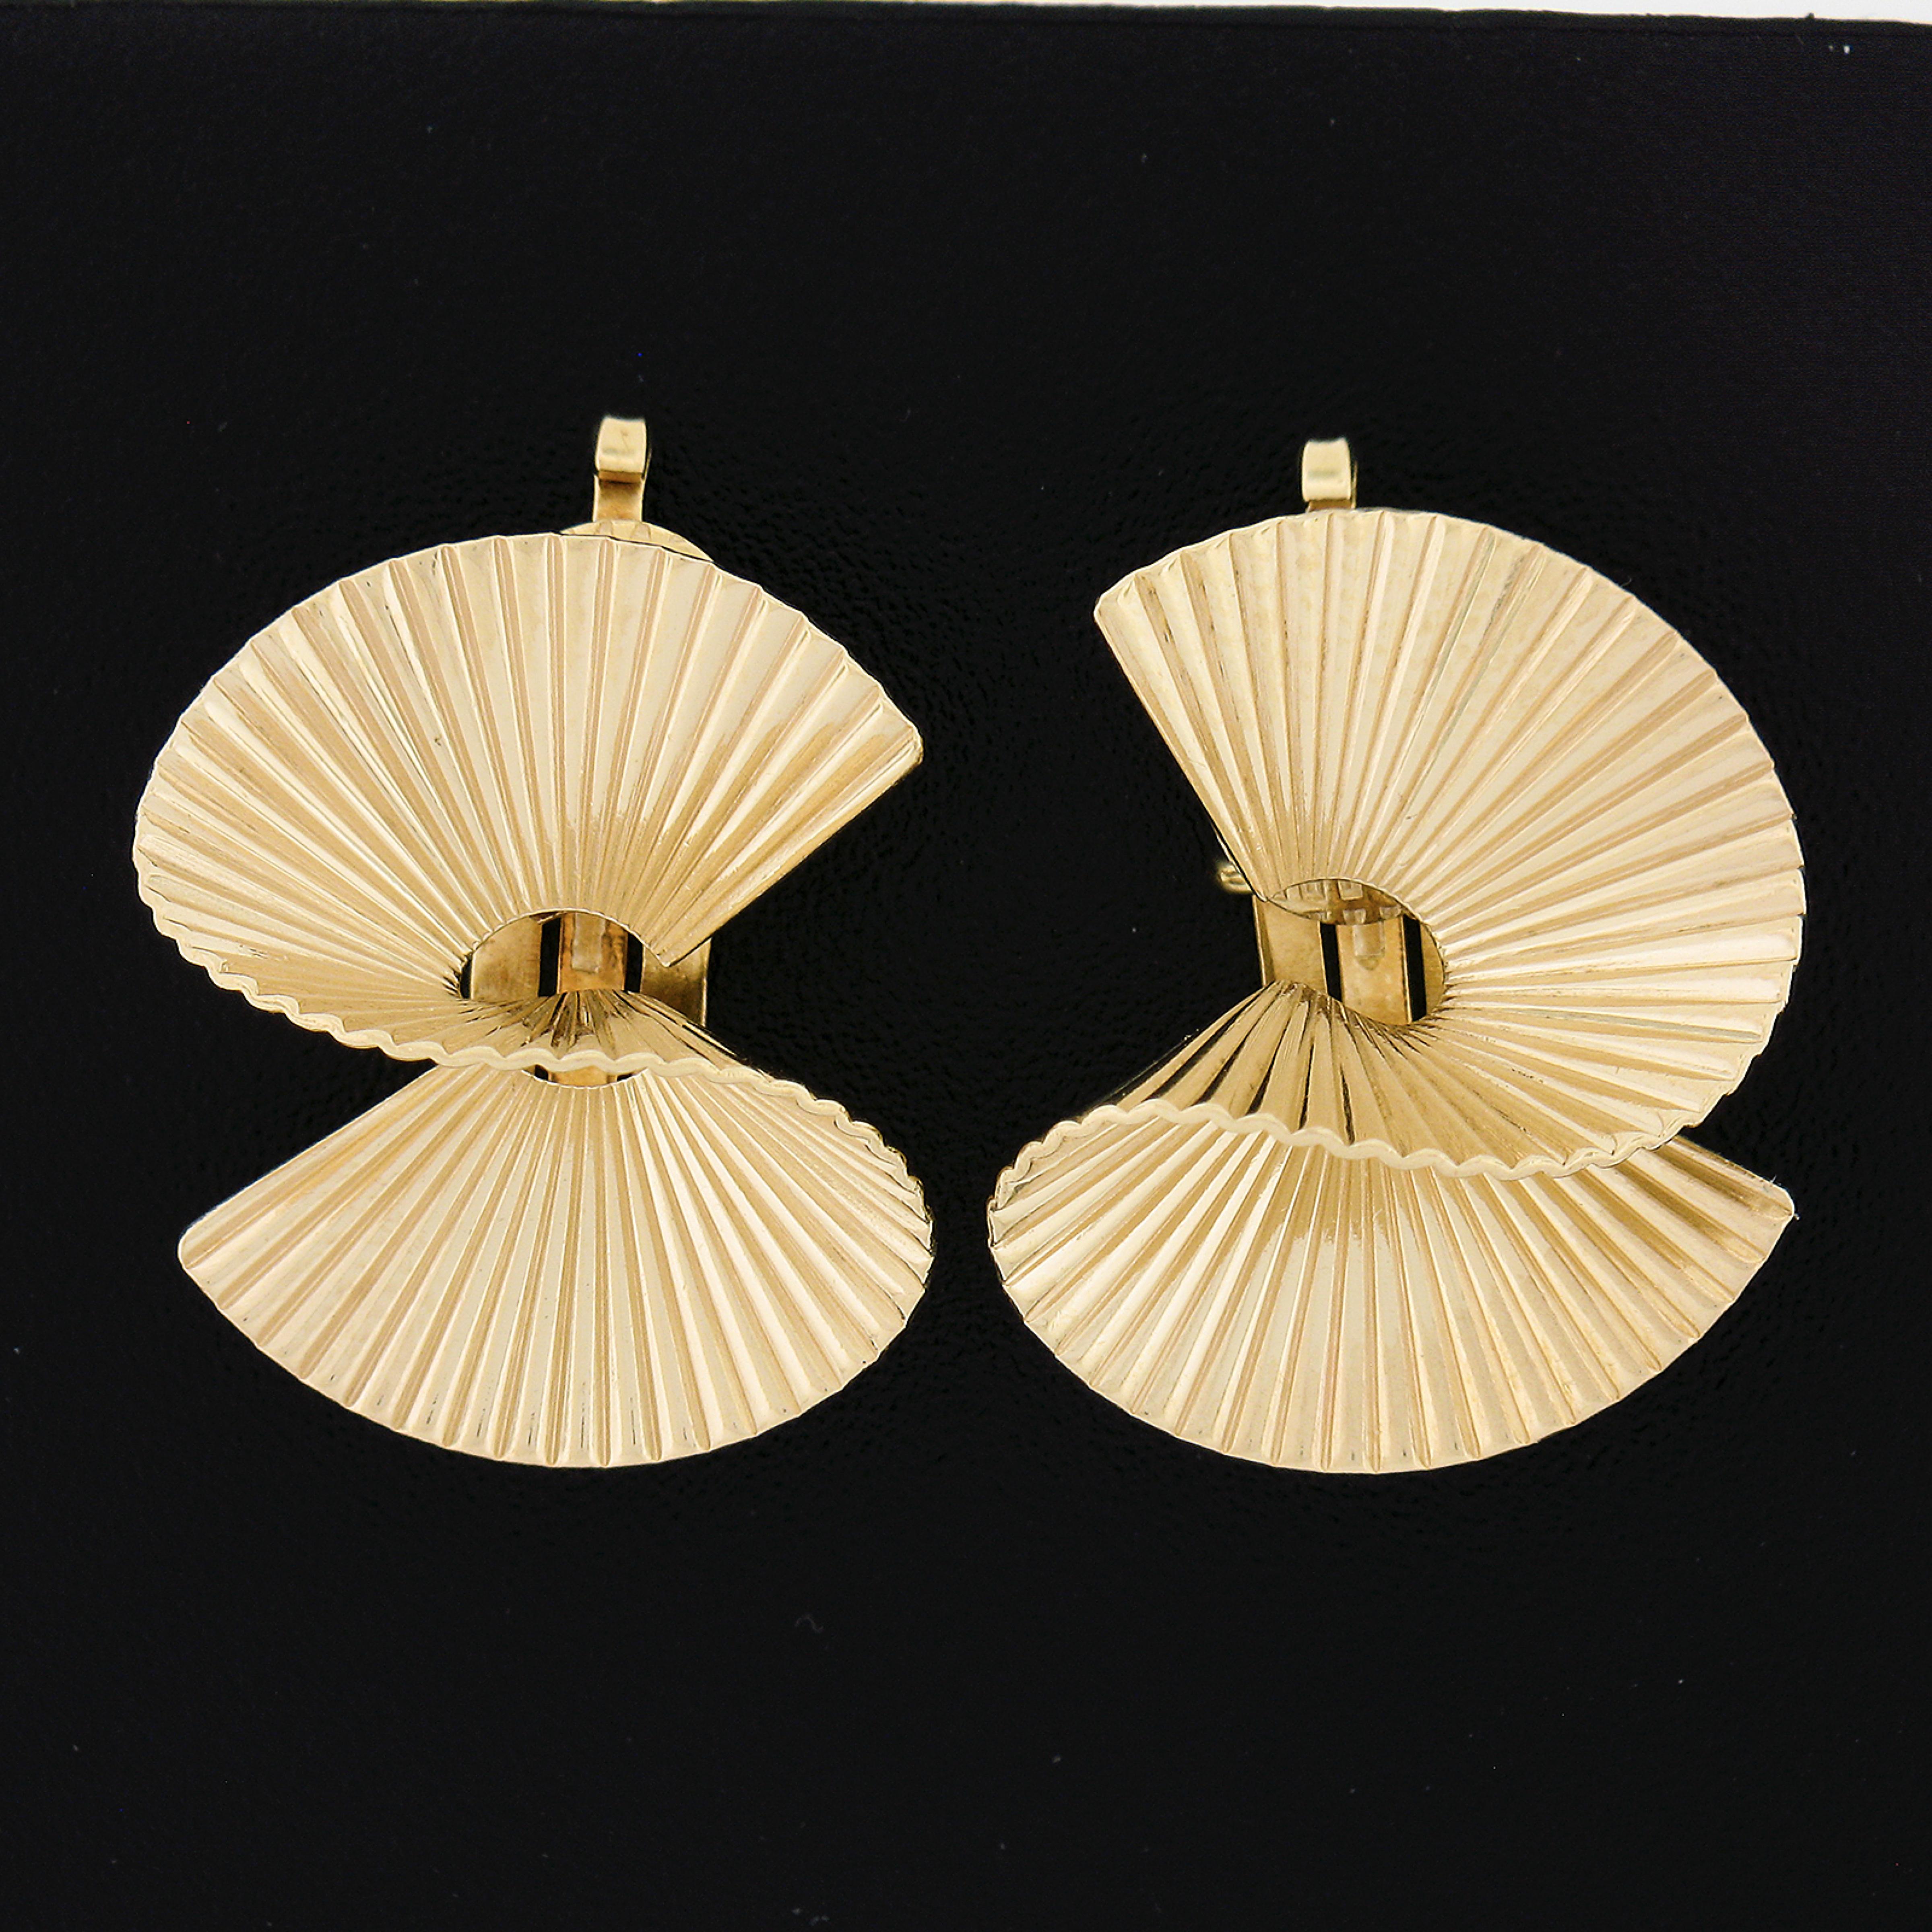 Hier haben wir ein wunderschönes Paar Vintage-Ohrringe, die in massivem 14k Gelbgold gefertigt sind. Sie zeichnen sich durch ein hübsches gedrehtes Design mit einem eleganten gerillten/geriffelten Muster aus, das dem Paar sein einzigartiges und